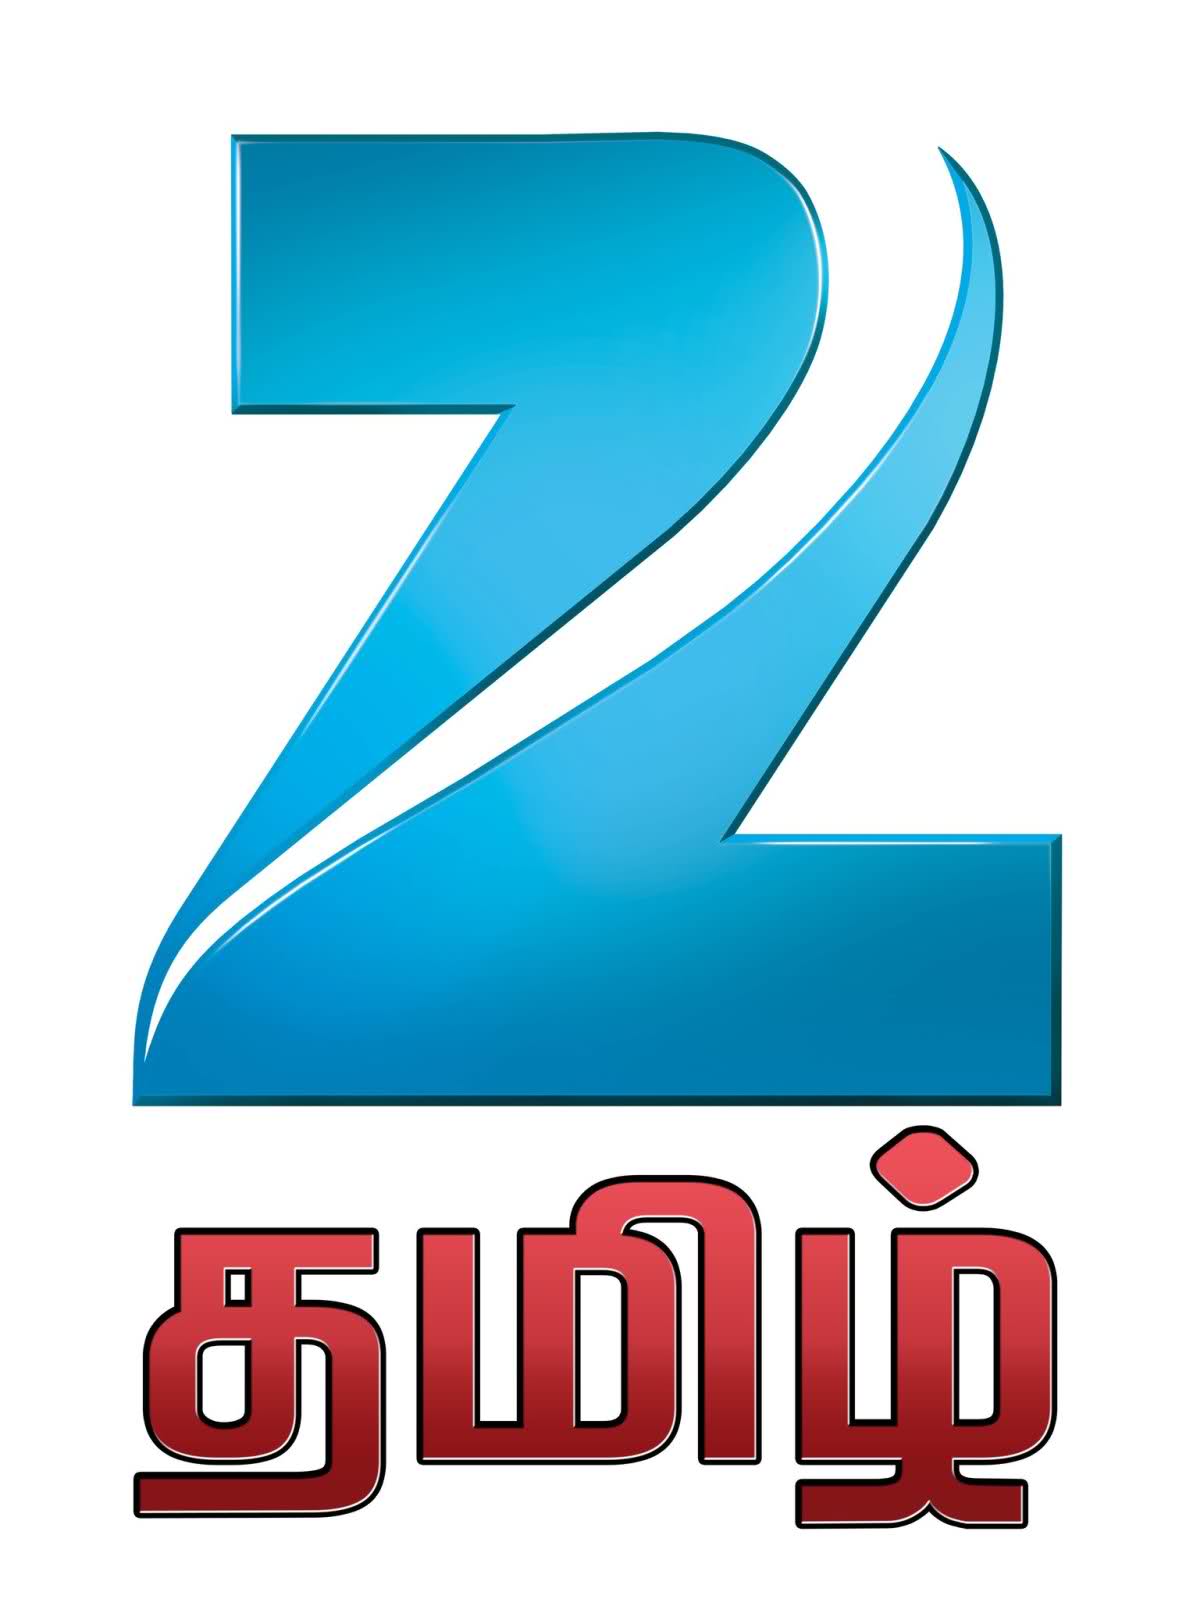 New Logos of Zee Channels in Hi-Resolution